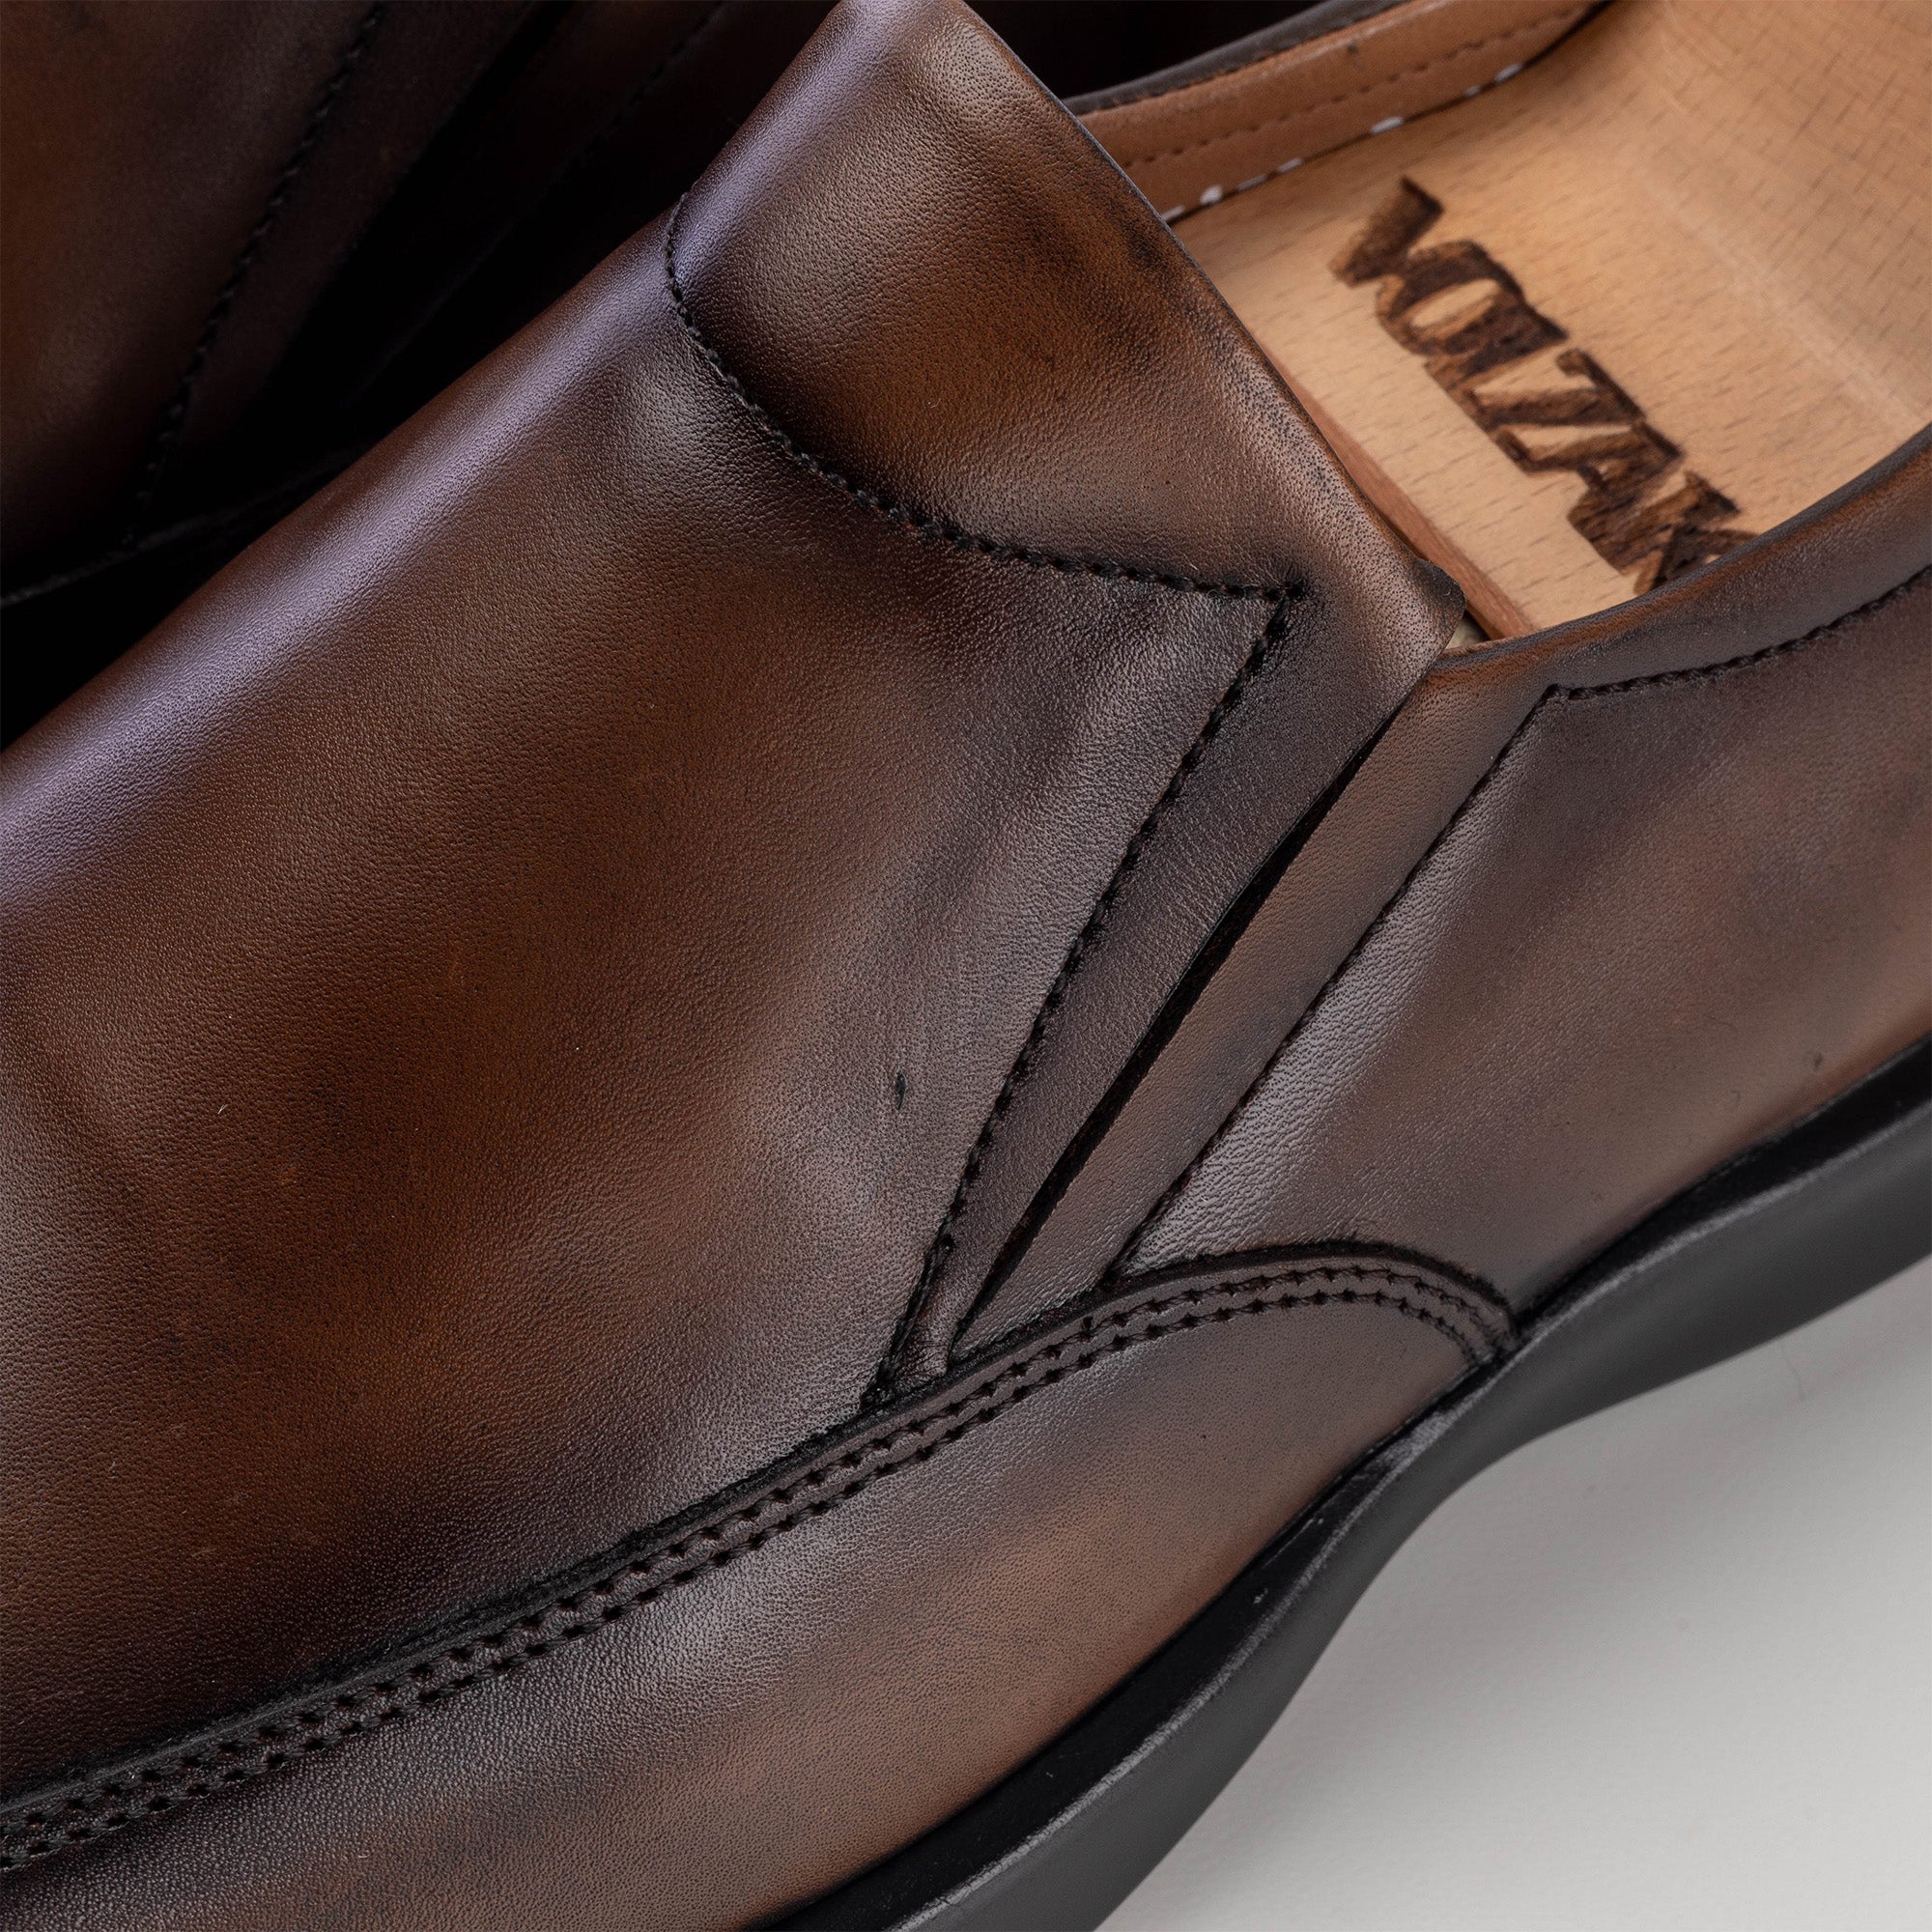 ''5170 chaussure médicale en cuir marron vintage